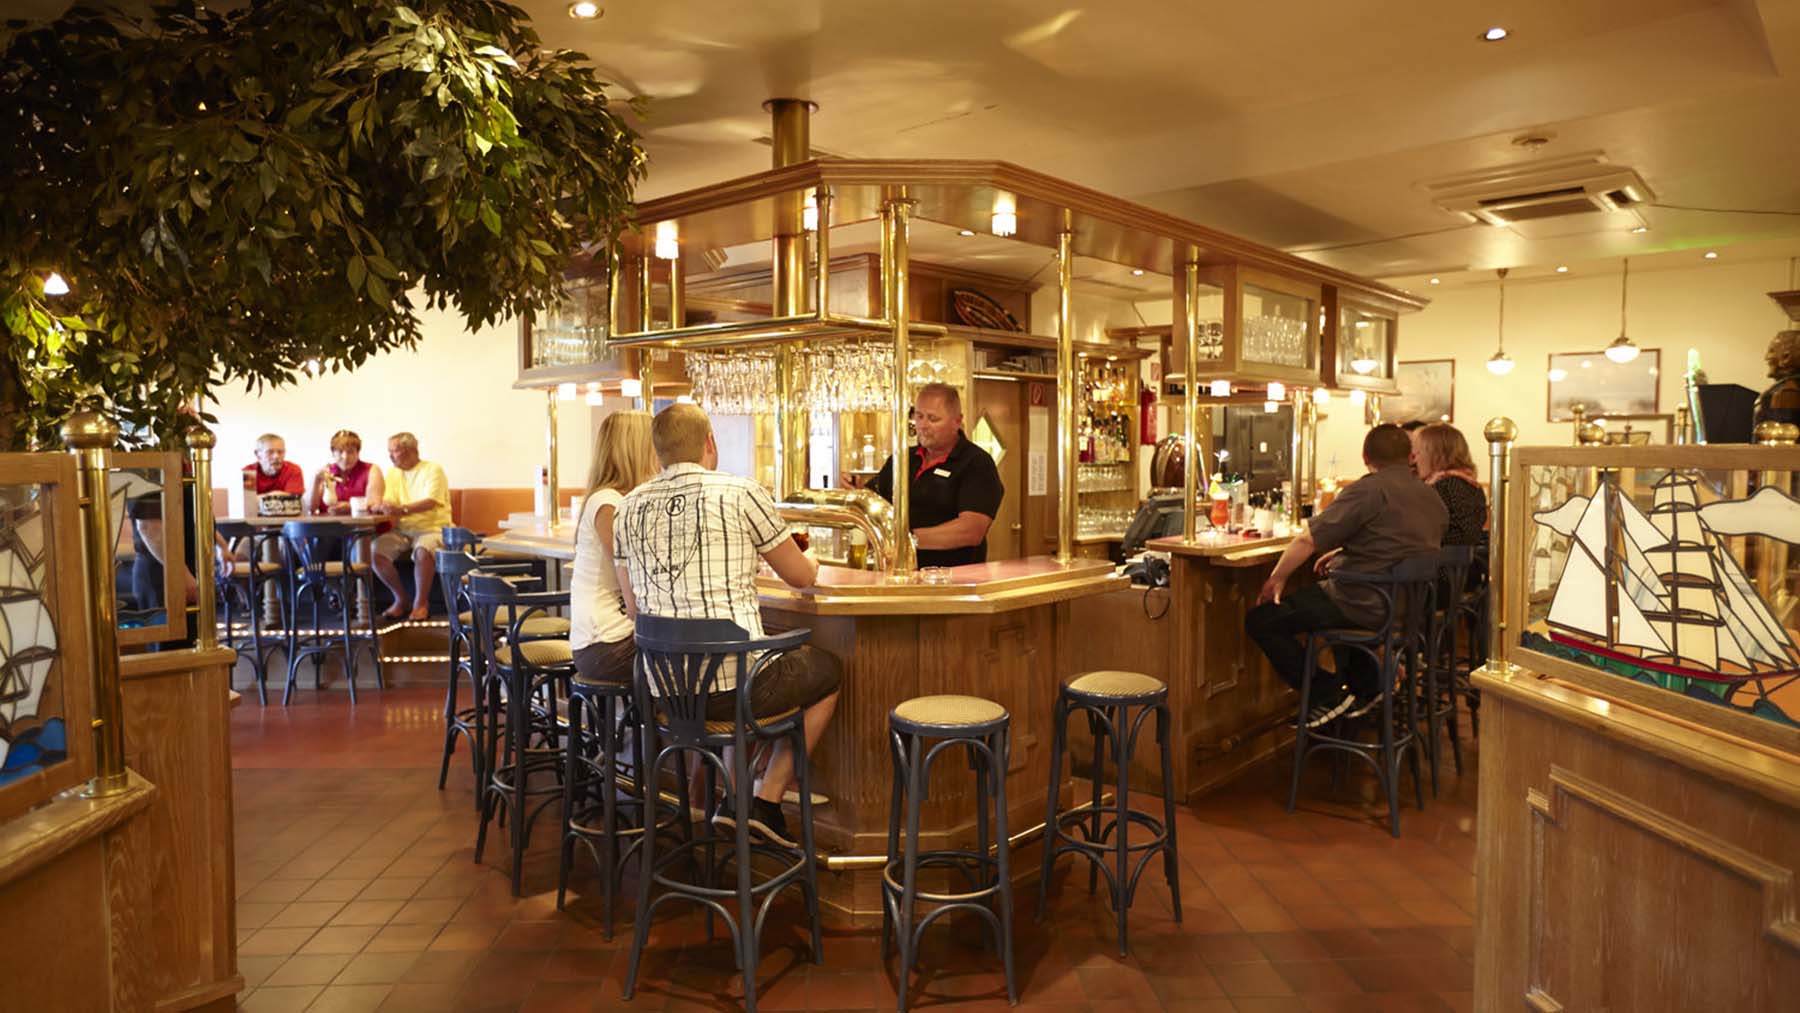 Bier- und Cocktail-Bar Fischerkate